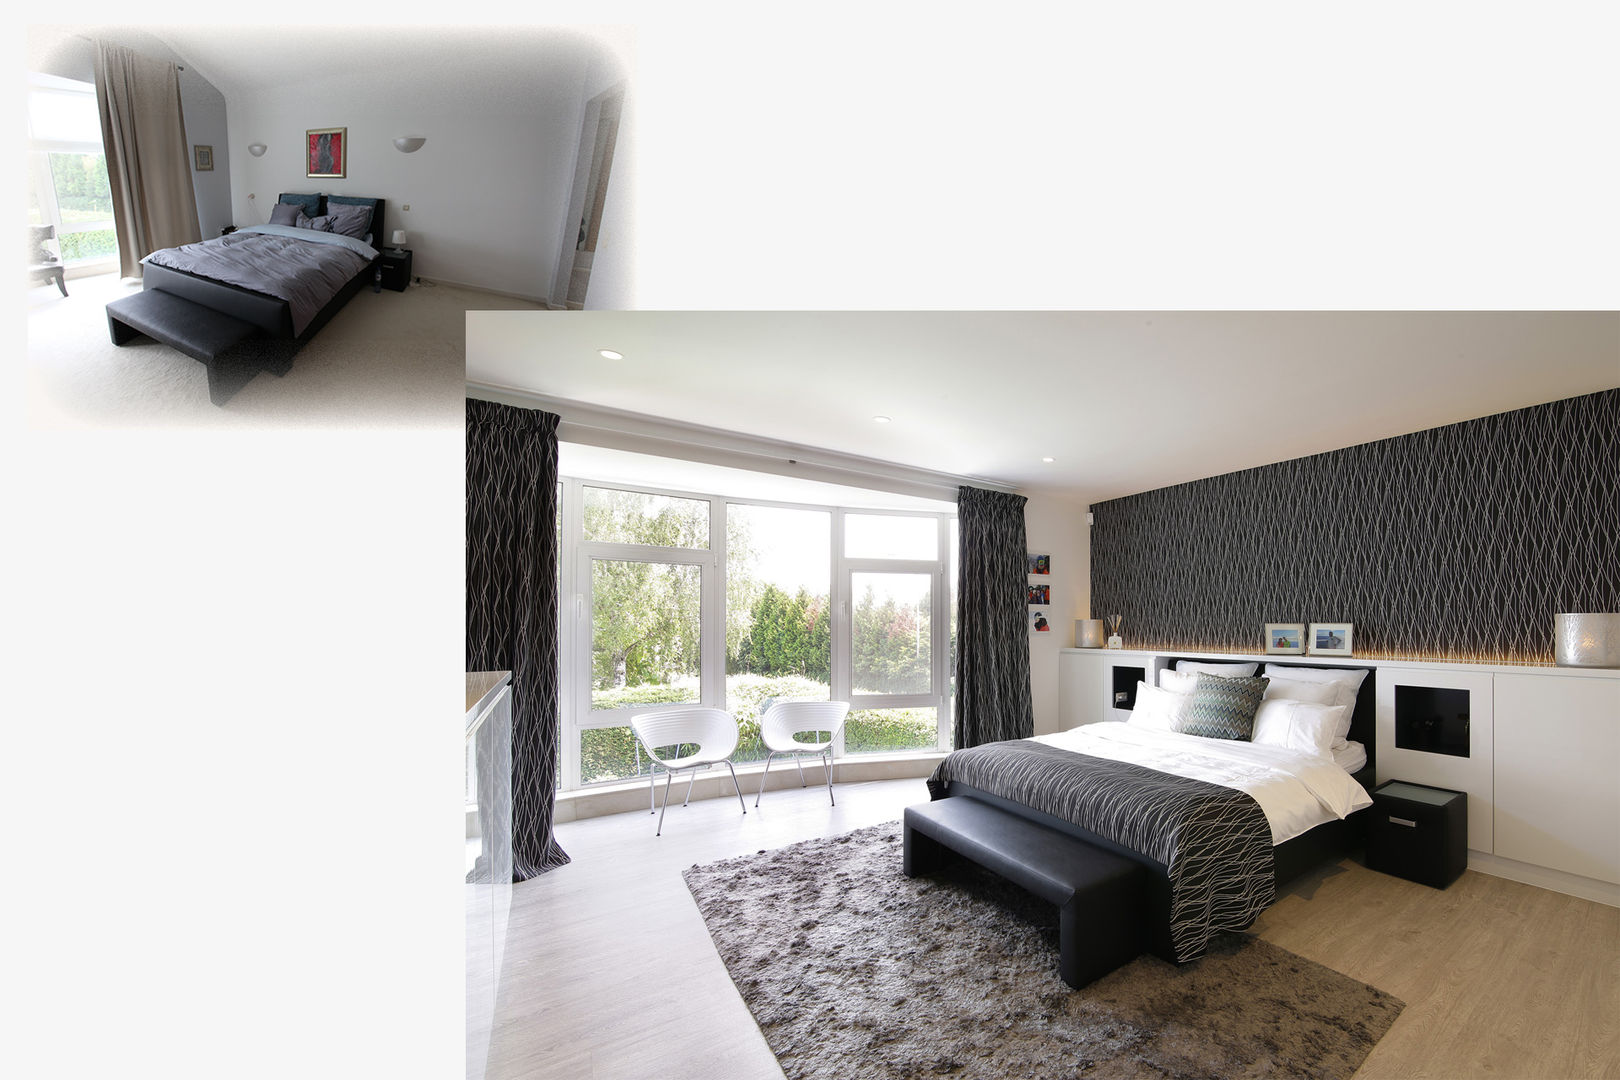 Nieuw inrichting voor de master bedroom Marcotte Style master bedroom,slaapkamer,gezellig slaapkamer,interieur,interieurspecialist